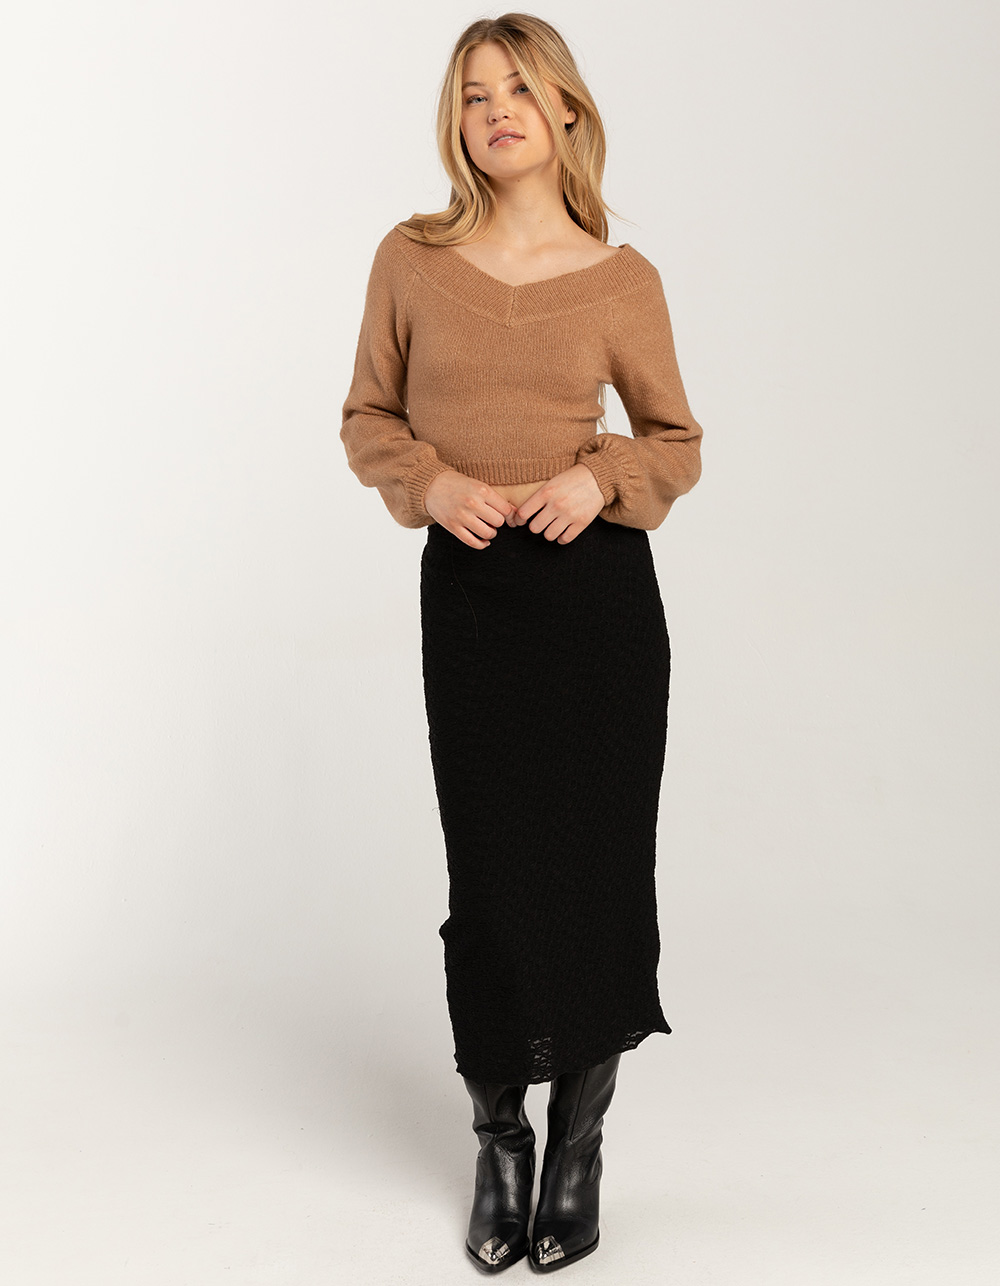 WEST OF MELROSE Textured Womens Midi Skirt - BLACK | Tillys